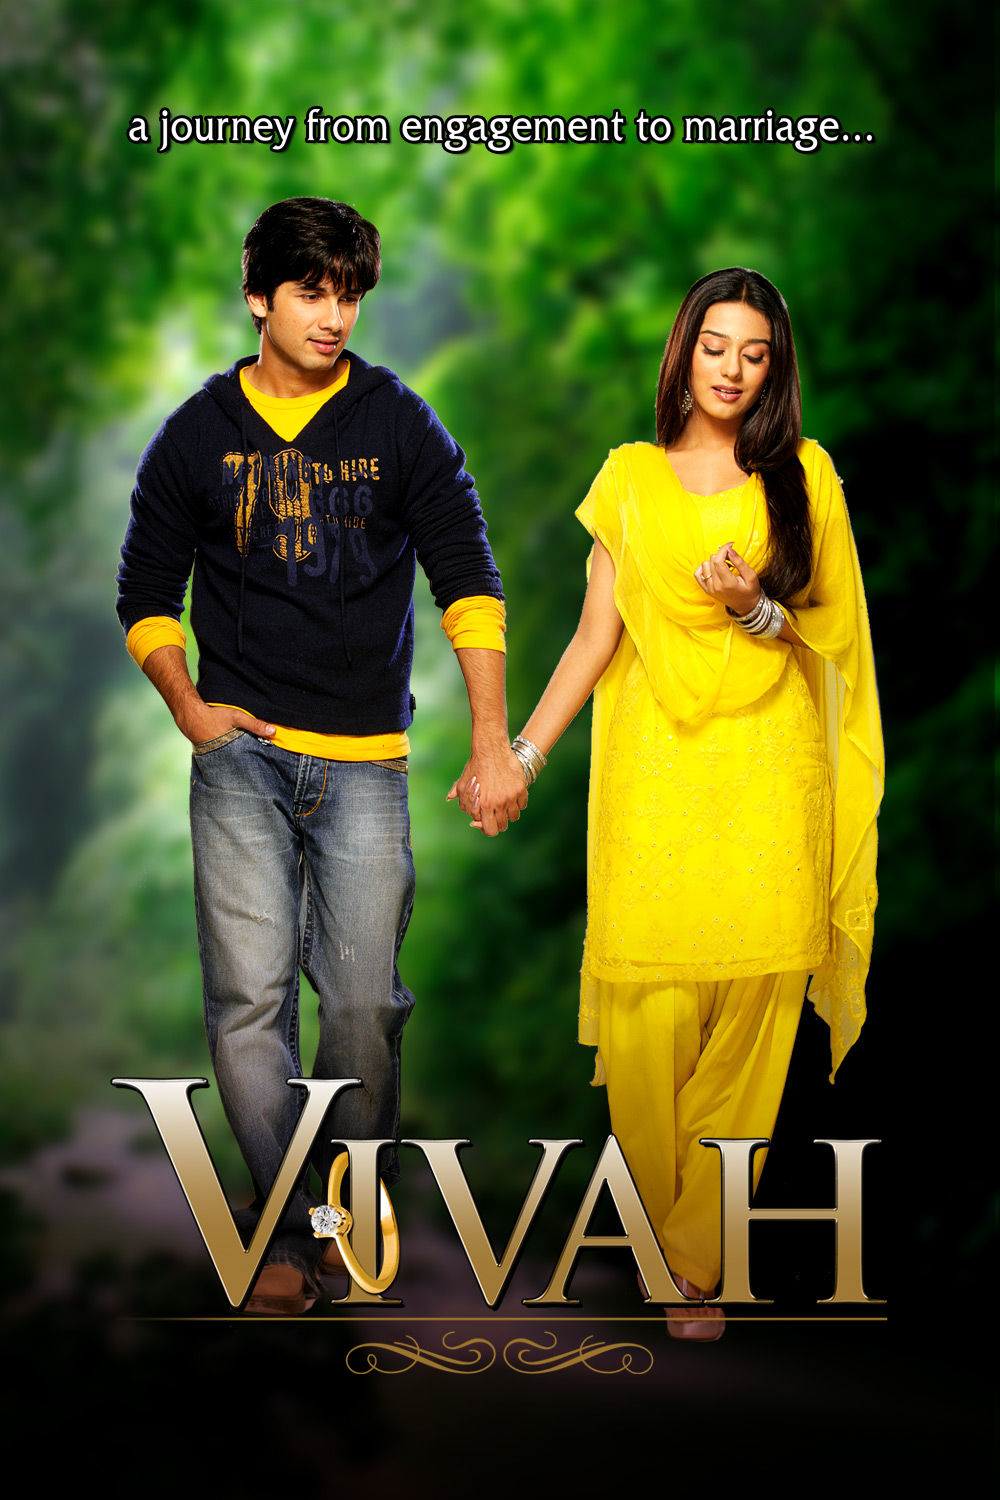 Watch Vivah Online